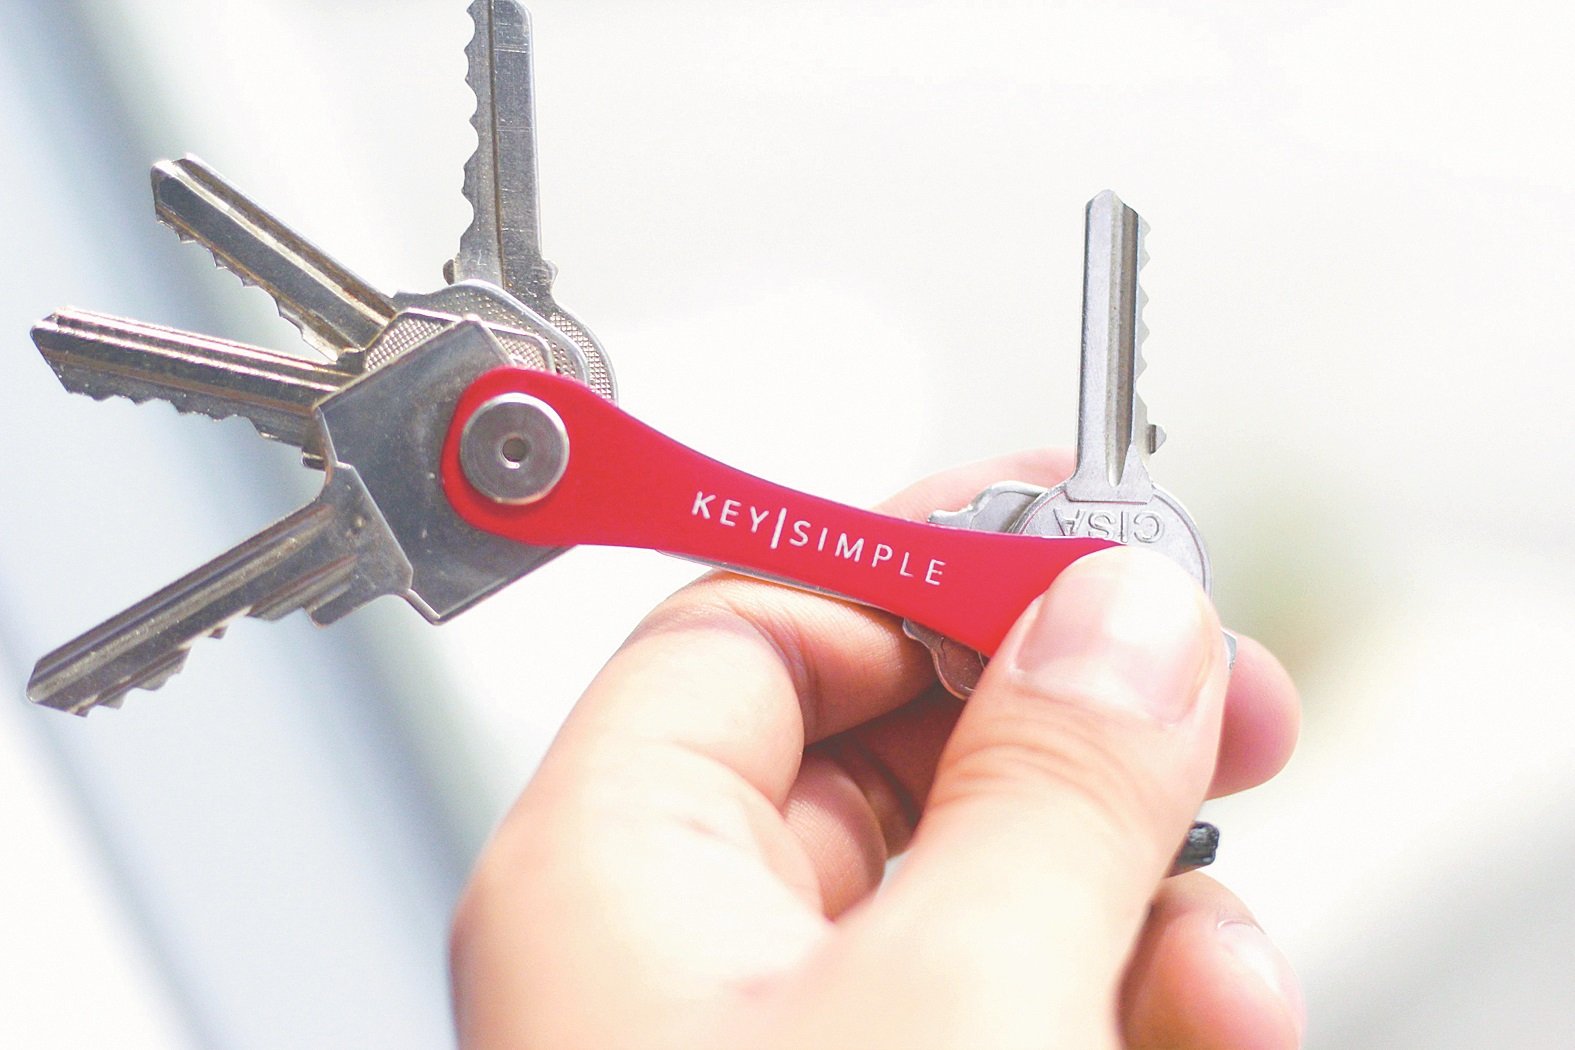 简单钥匙收纳器以瑞士刀状的小巧设计让人眼前一亮，视情况可串联至少6把或以上的钥匙。